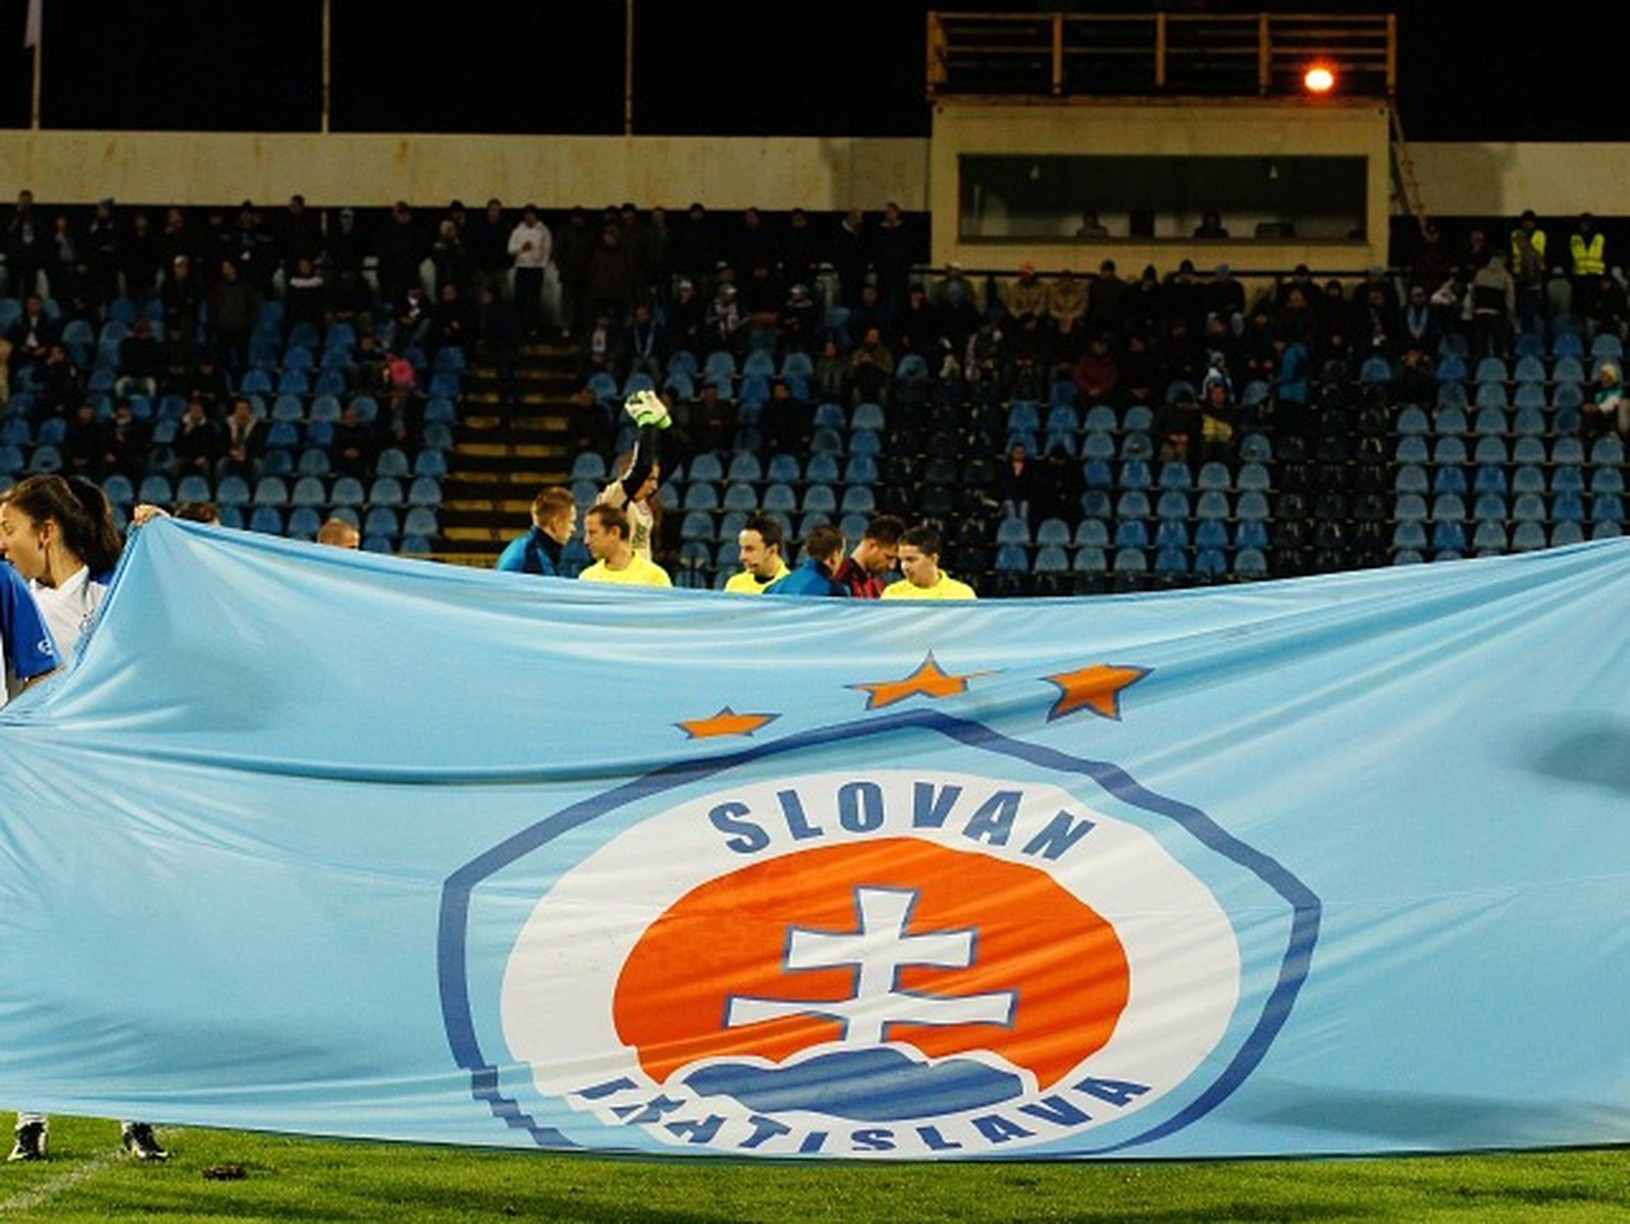 Klubová zástava Slovana pred